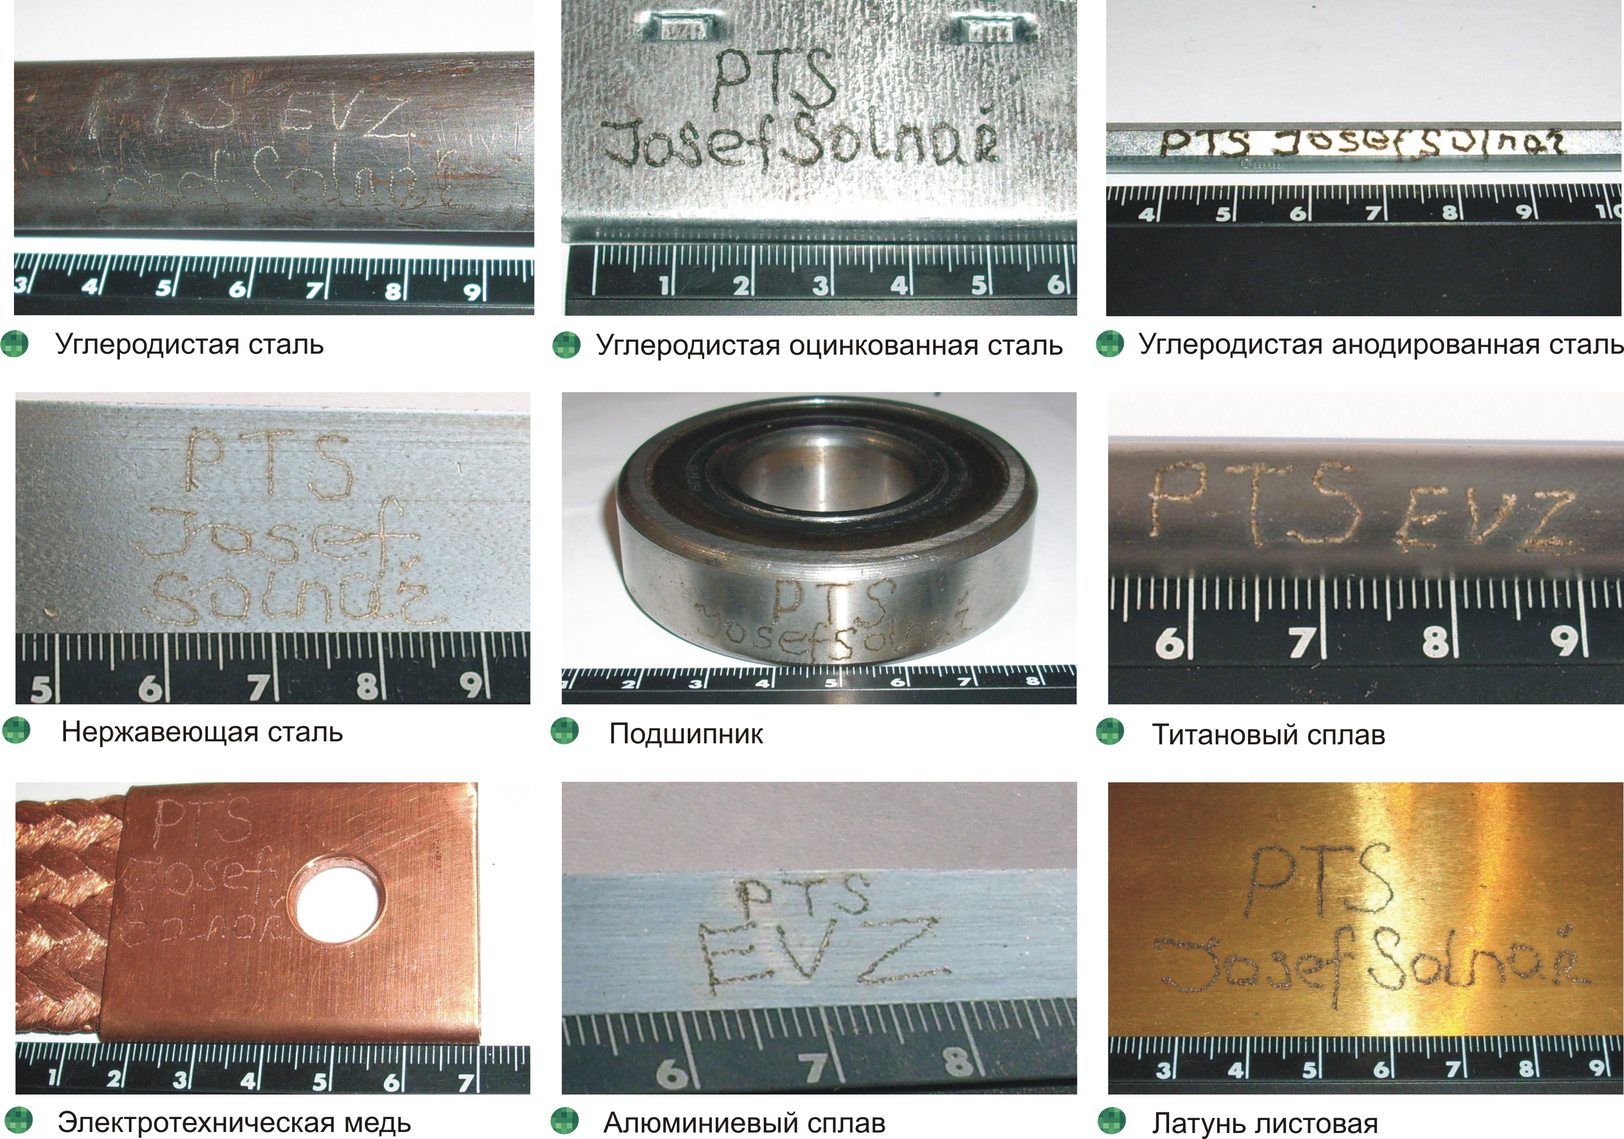 Примеры маркировки электроискровым пером EVZ (электрокарандашем) на некоторых видах изделий и материалов